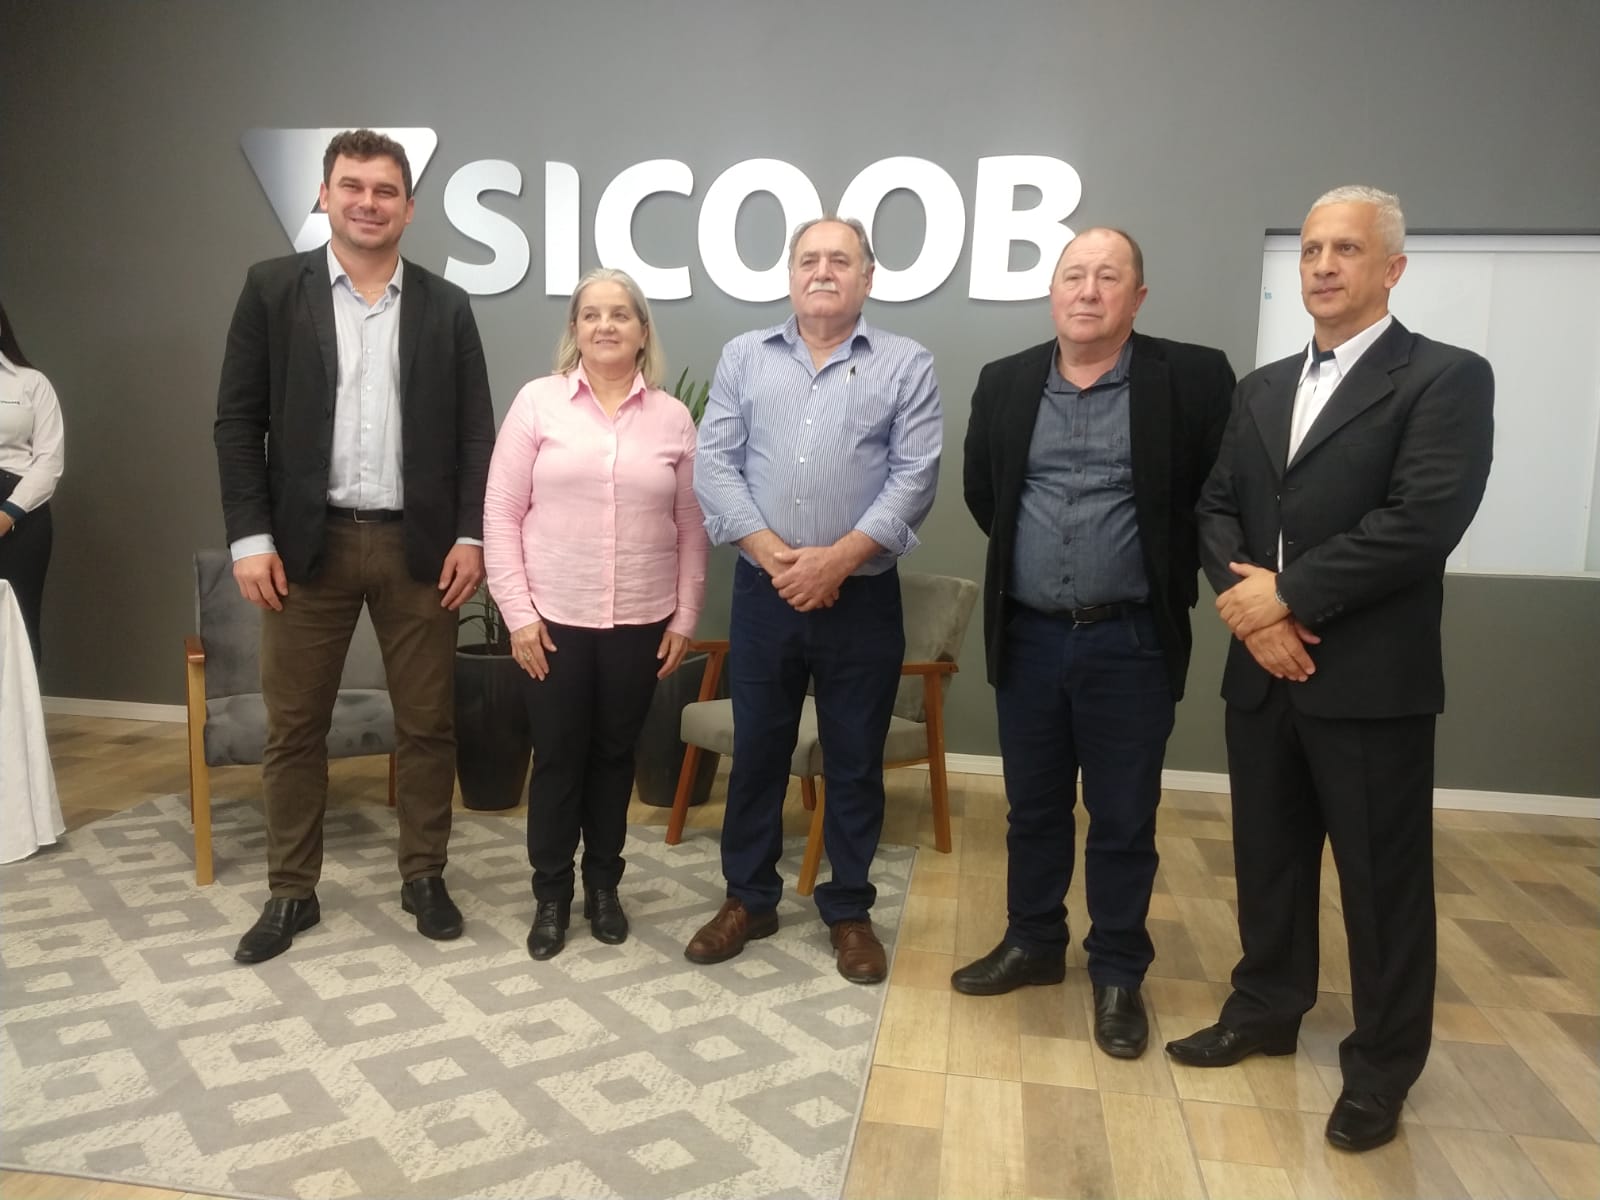 Sicoob Credicanoinhas inaugurou sua primeira agência em Castro